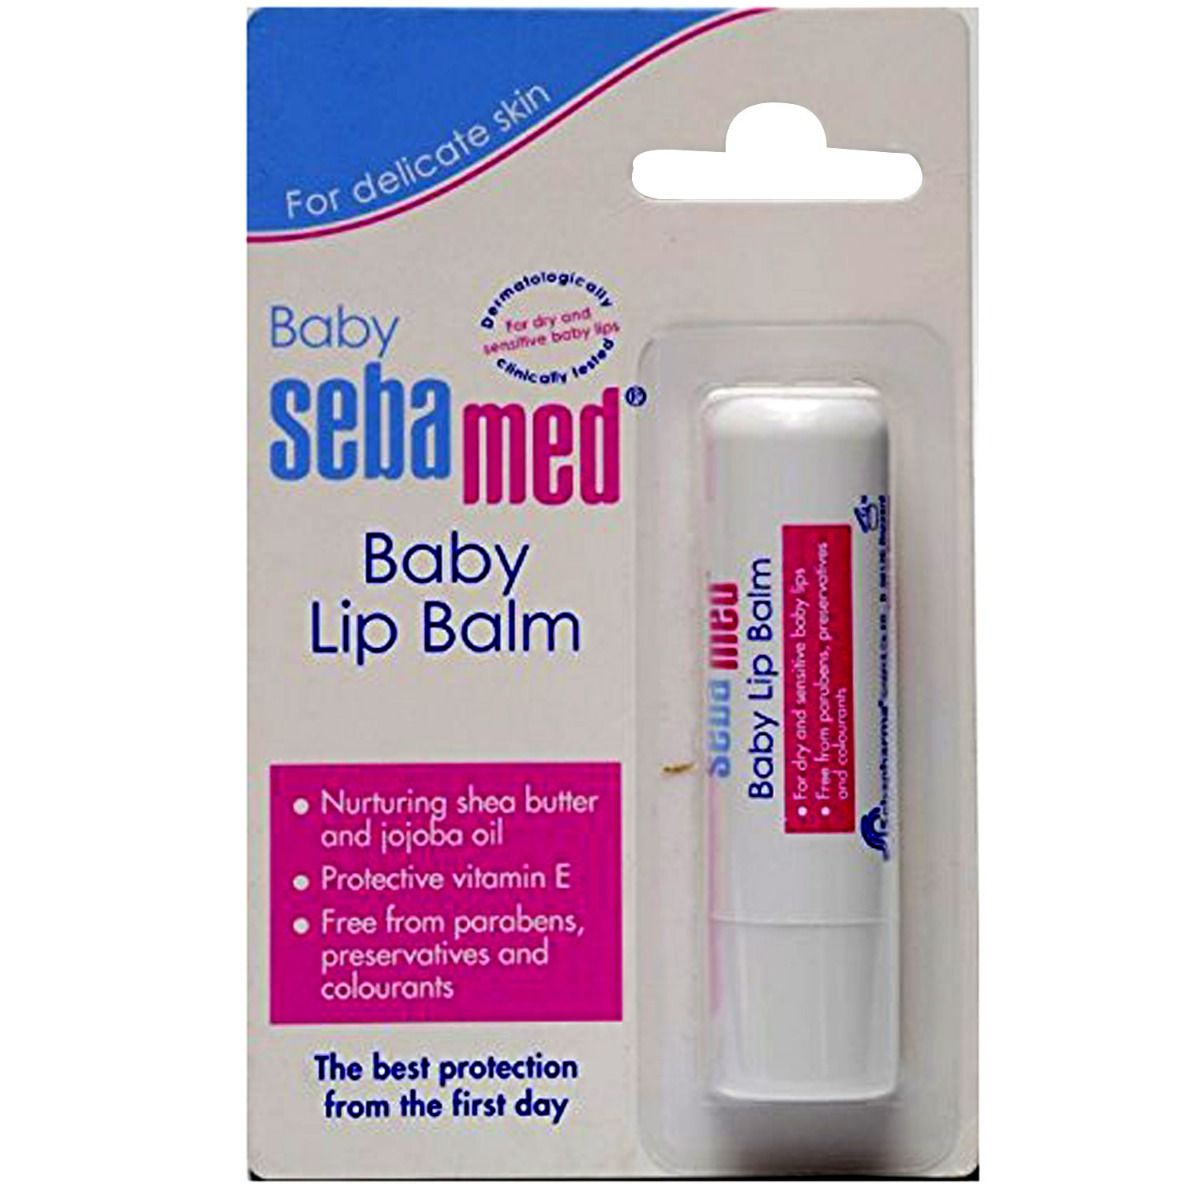 Buy Sebamed Baby Lip Balm, 4.8 gm Online